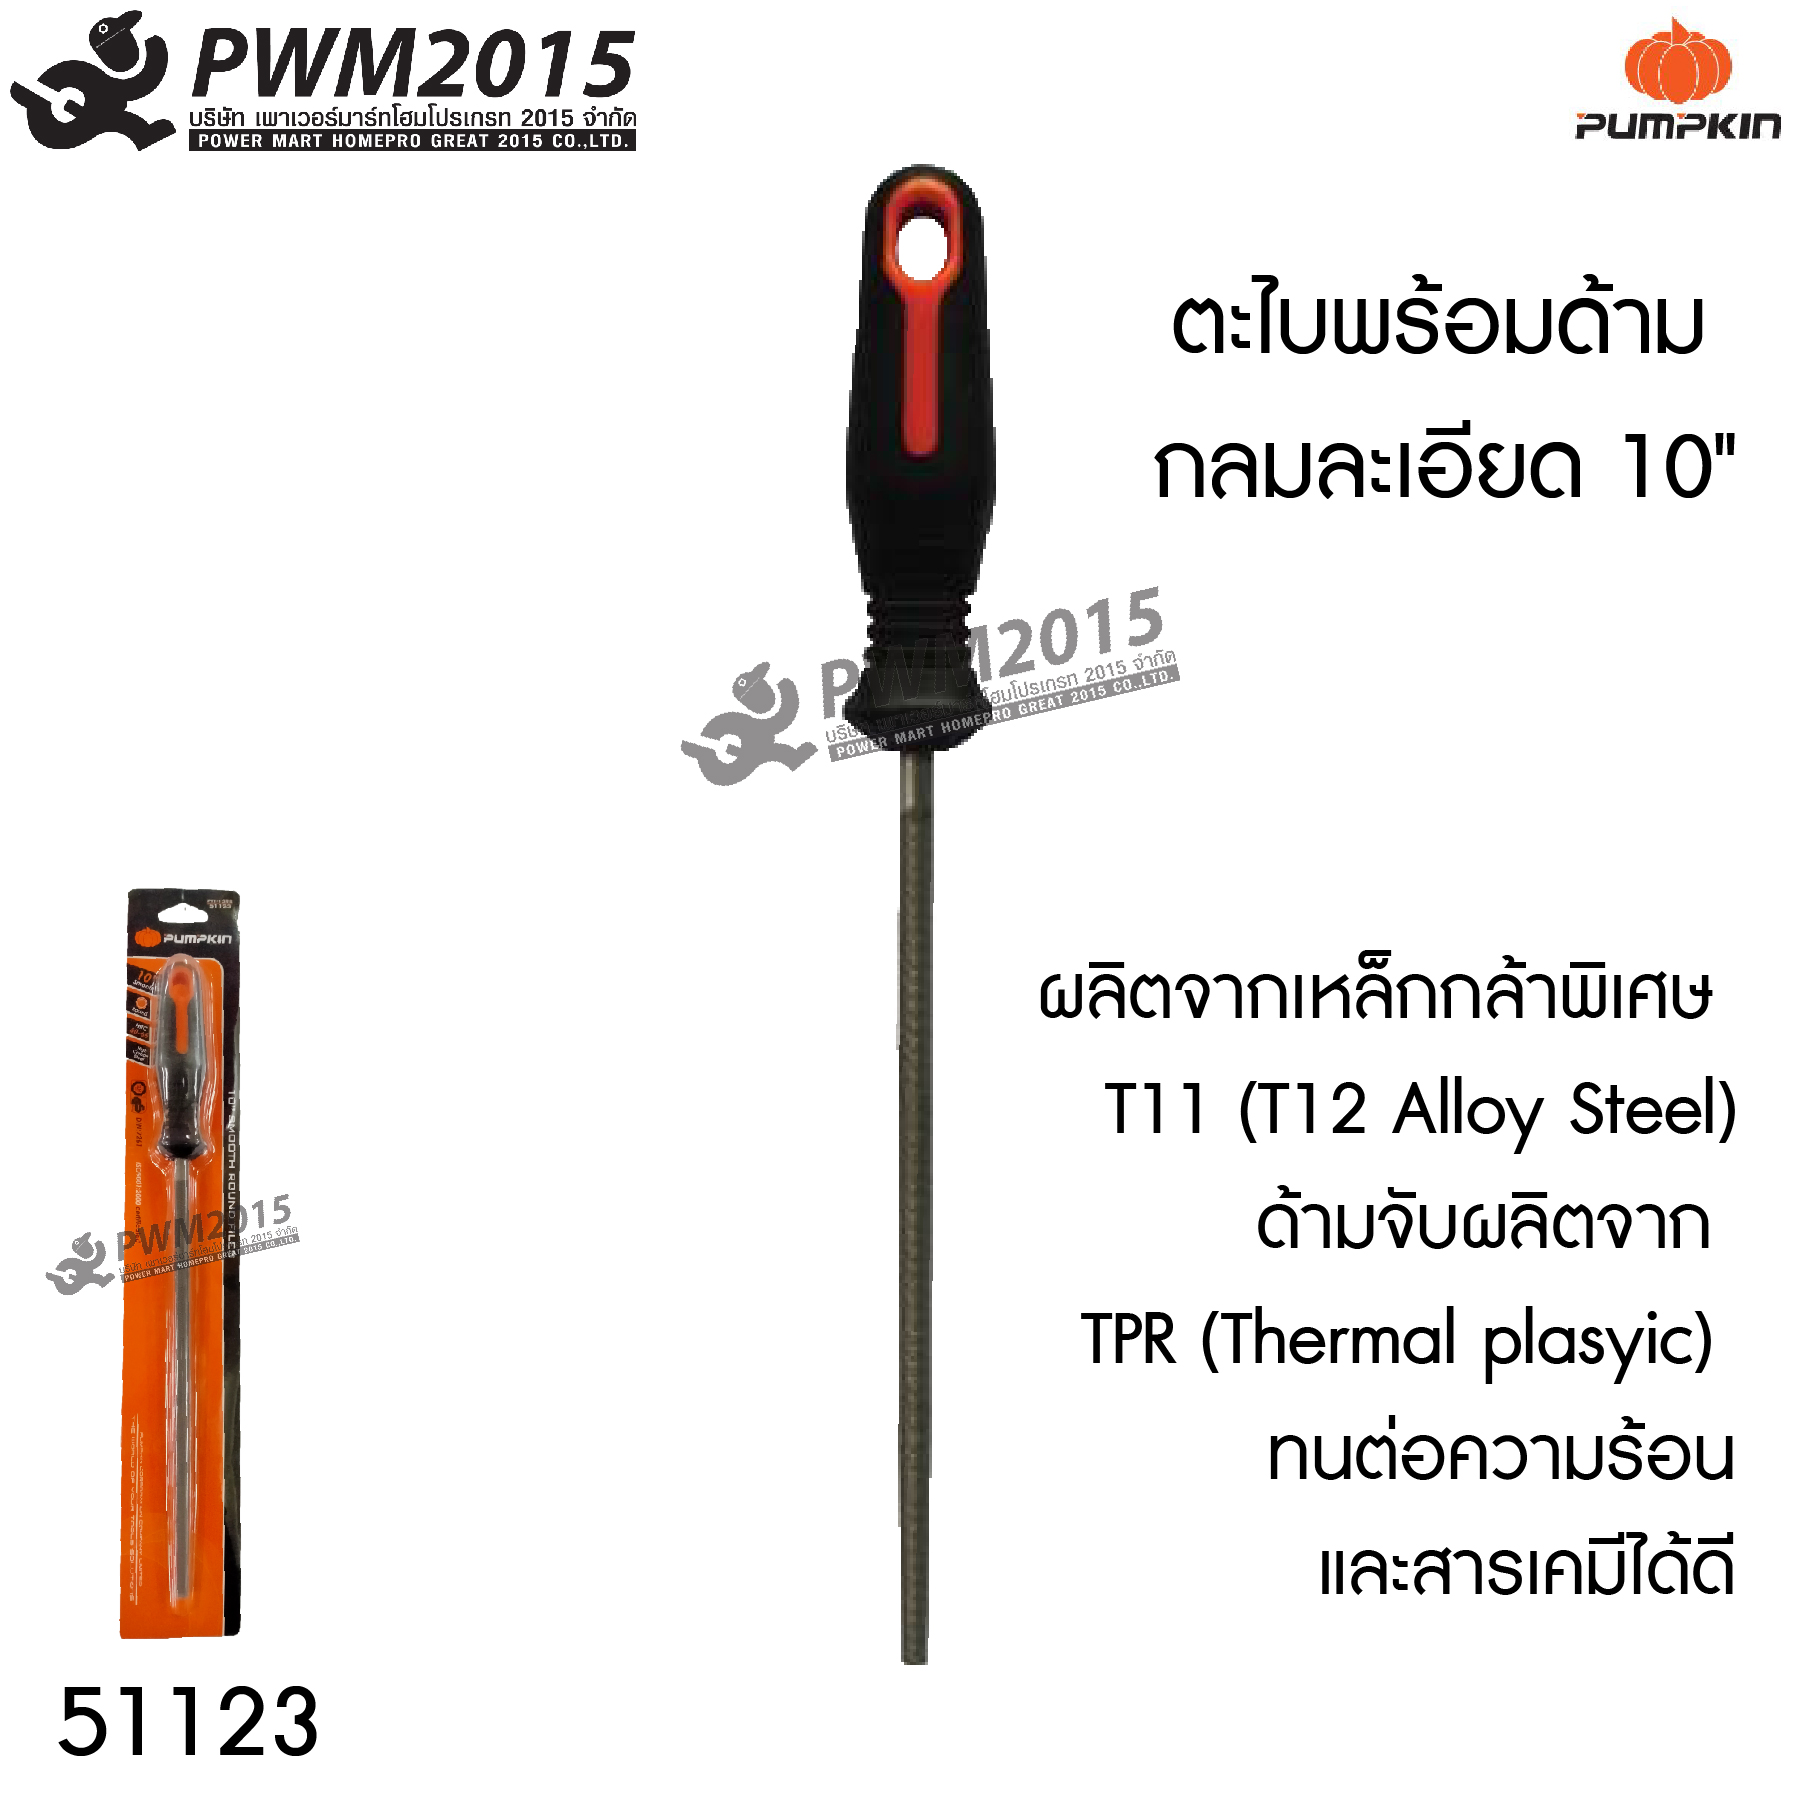 ตะไบ พร้อมด้าม กลมละเอียด 10 นิ้ว PUMPKIN 51123 ผลิตจากเหล็กกล้าพิเศษ T11 (T12 Alloy Steel) ด้ามจับผลิตจาก TPR ทนต่อความร้อนและสารเคมีได้ดี PWM2015